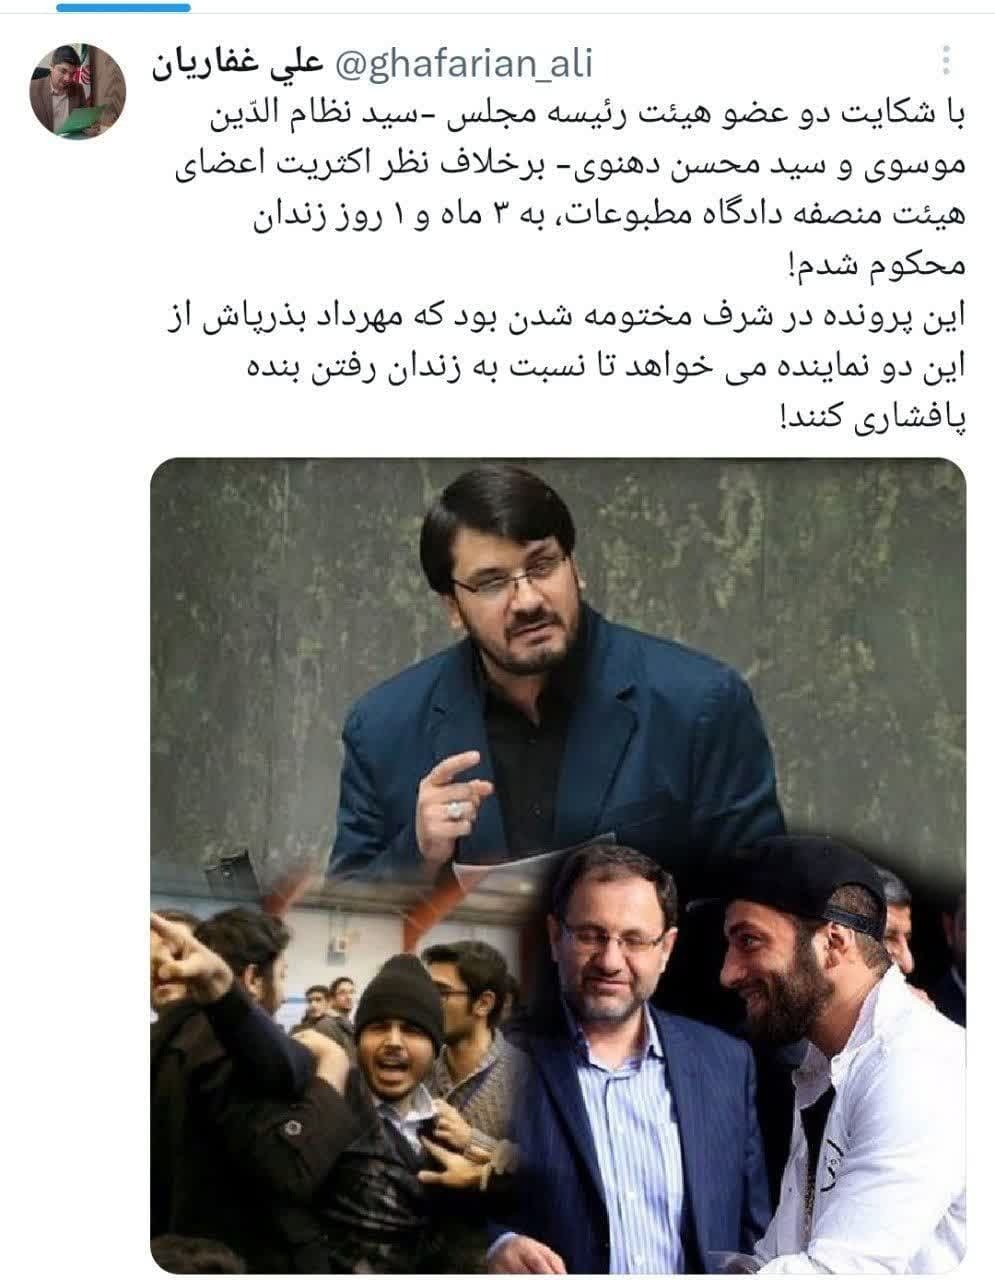 تلاش مهرداد بذرپاش وزیر راه دولت رئیسی برای شکایت و زندانی کردن مدیرمسئول صراط نیوز